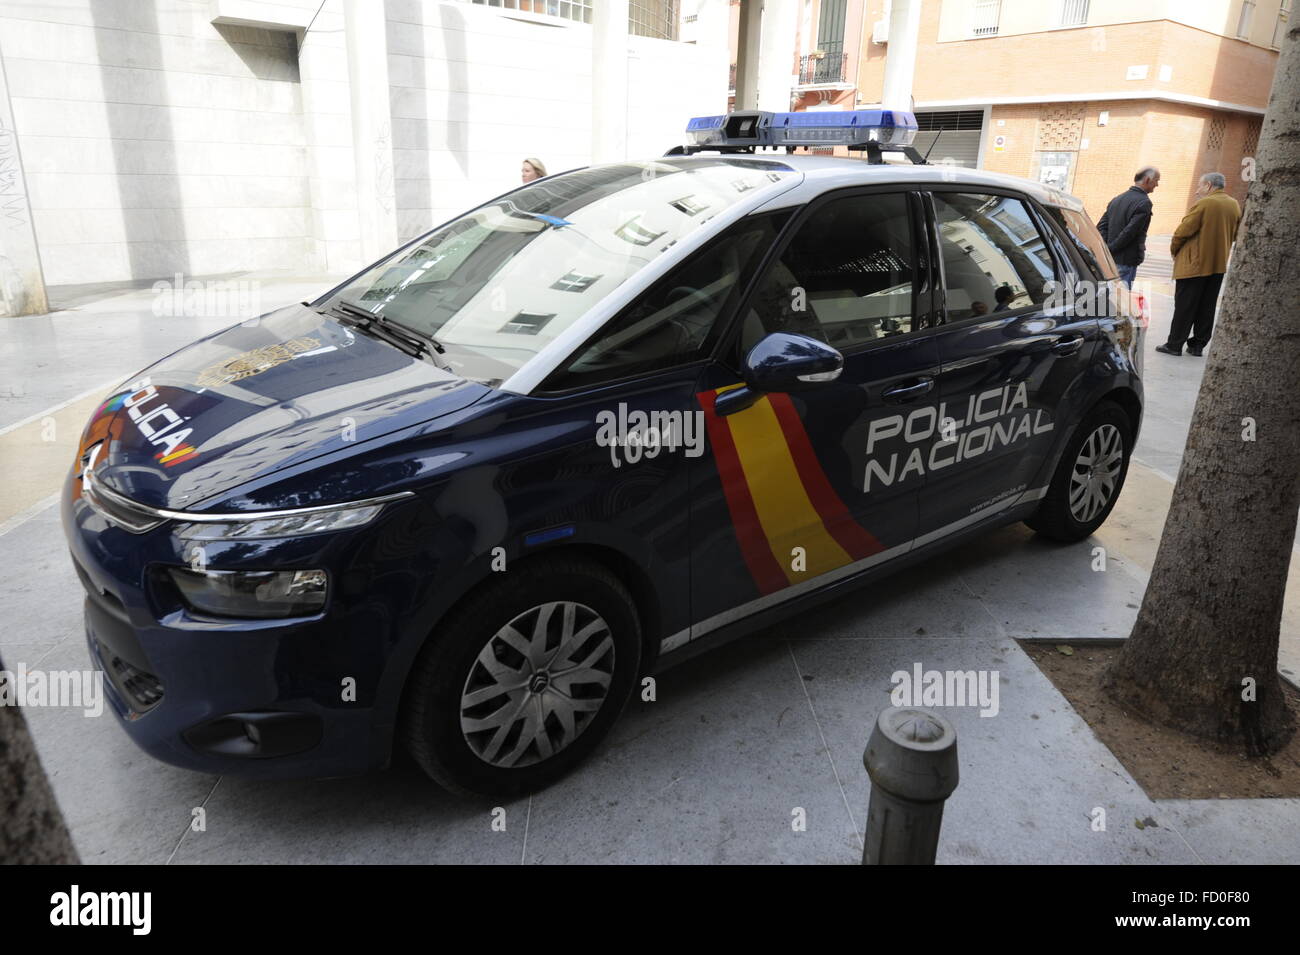 Spanish police car in malaga Spain Stock Photo